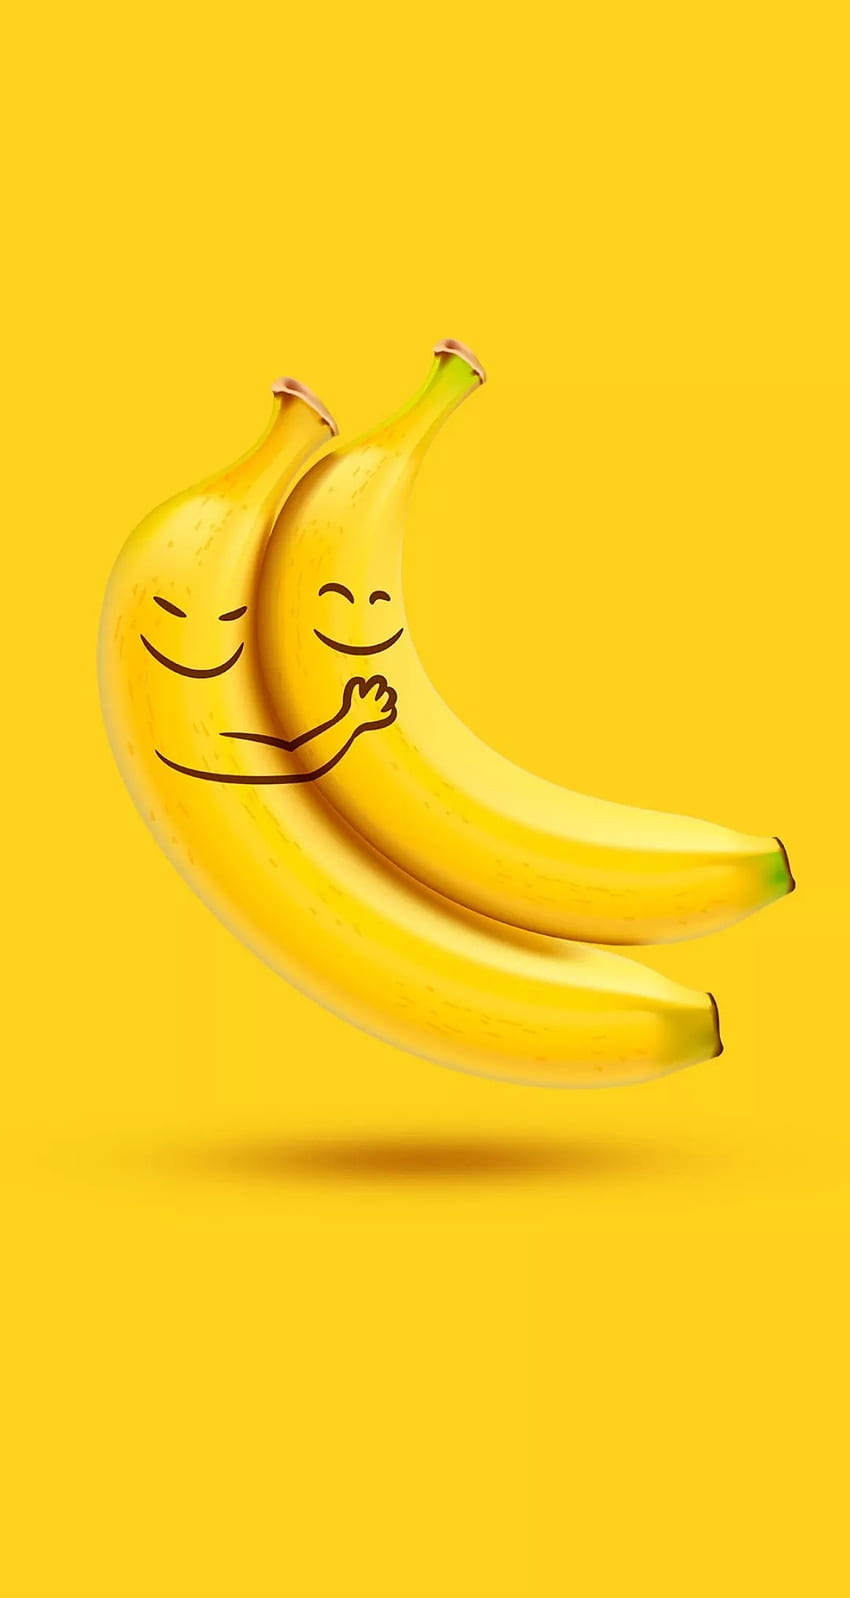 Plantain banana HD wallpaper